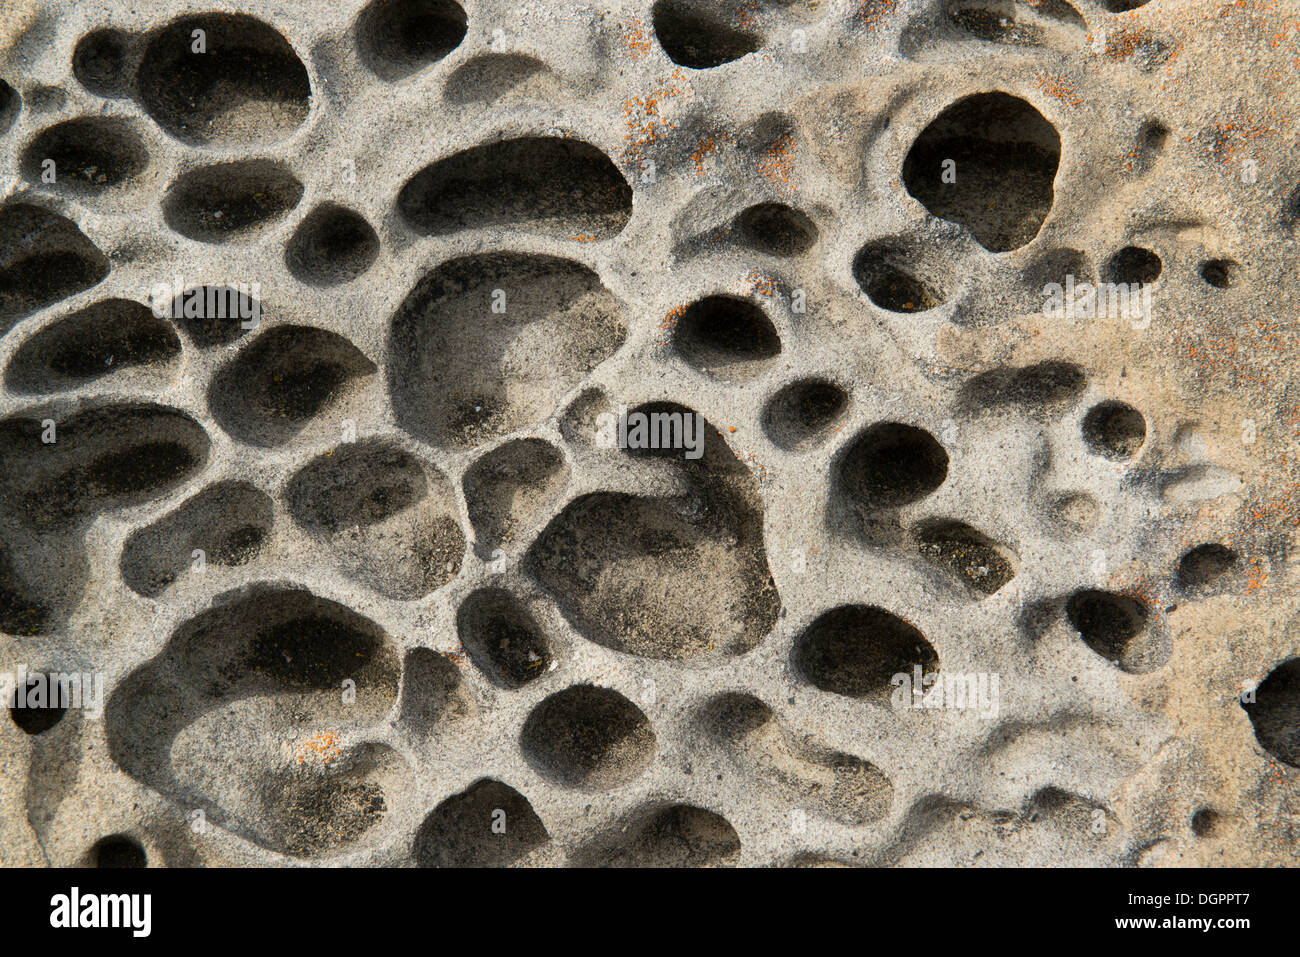 Tafoni formazioni rocciose, sale Point State Park, Jenner, California, Stati Uniti Foto Stock